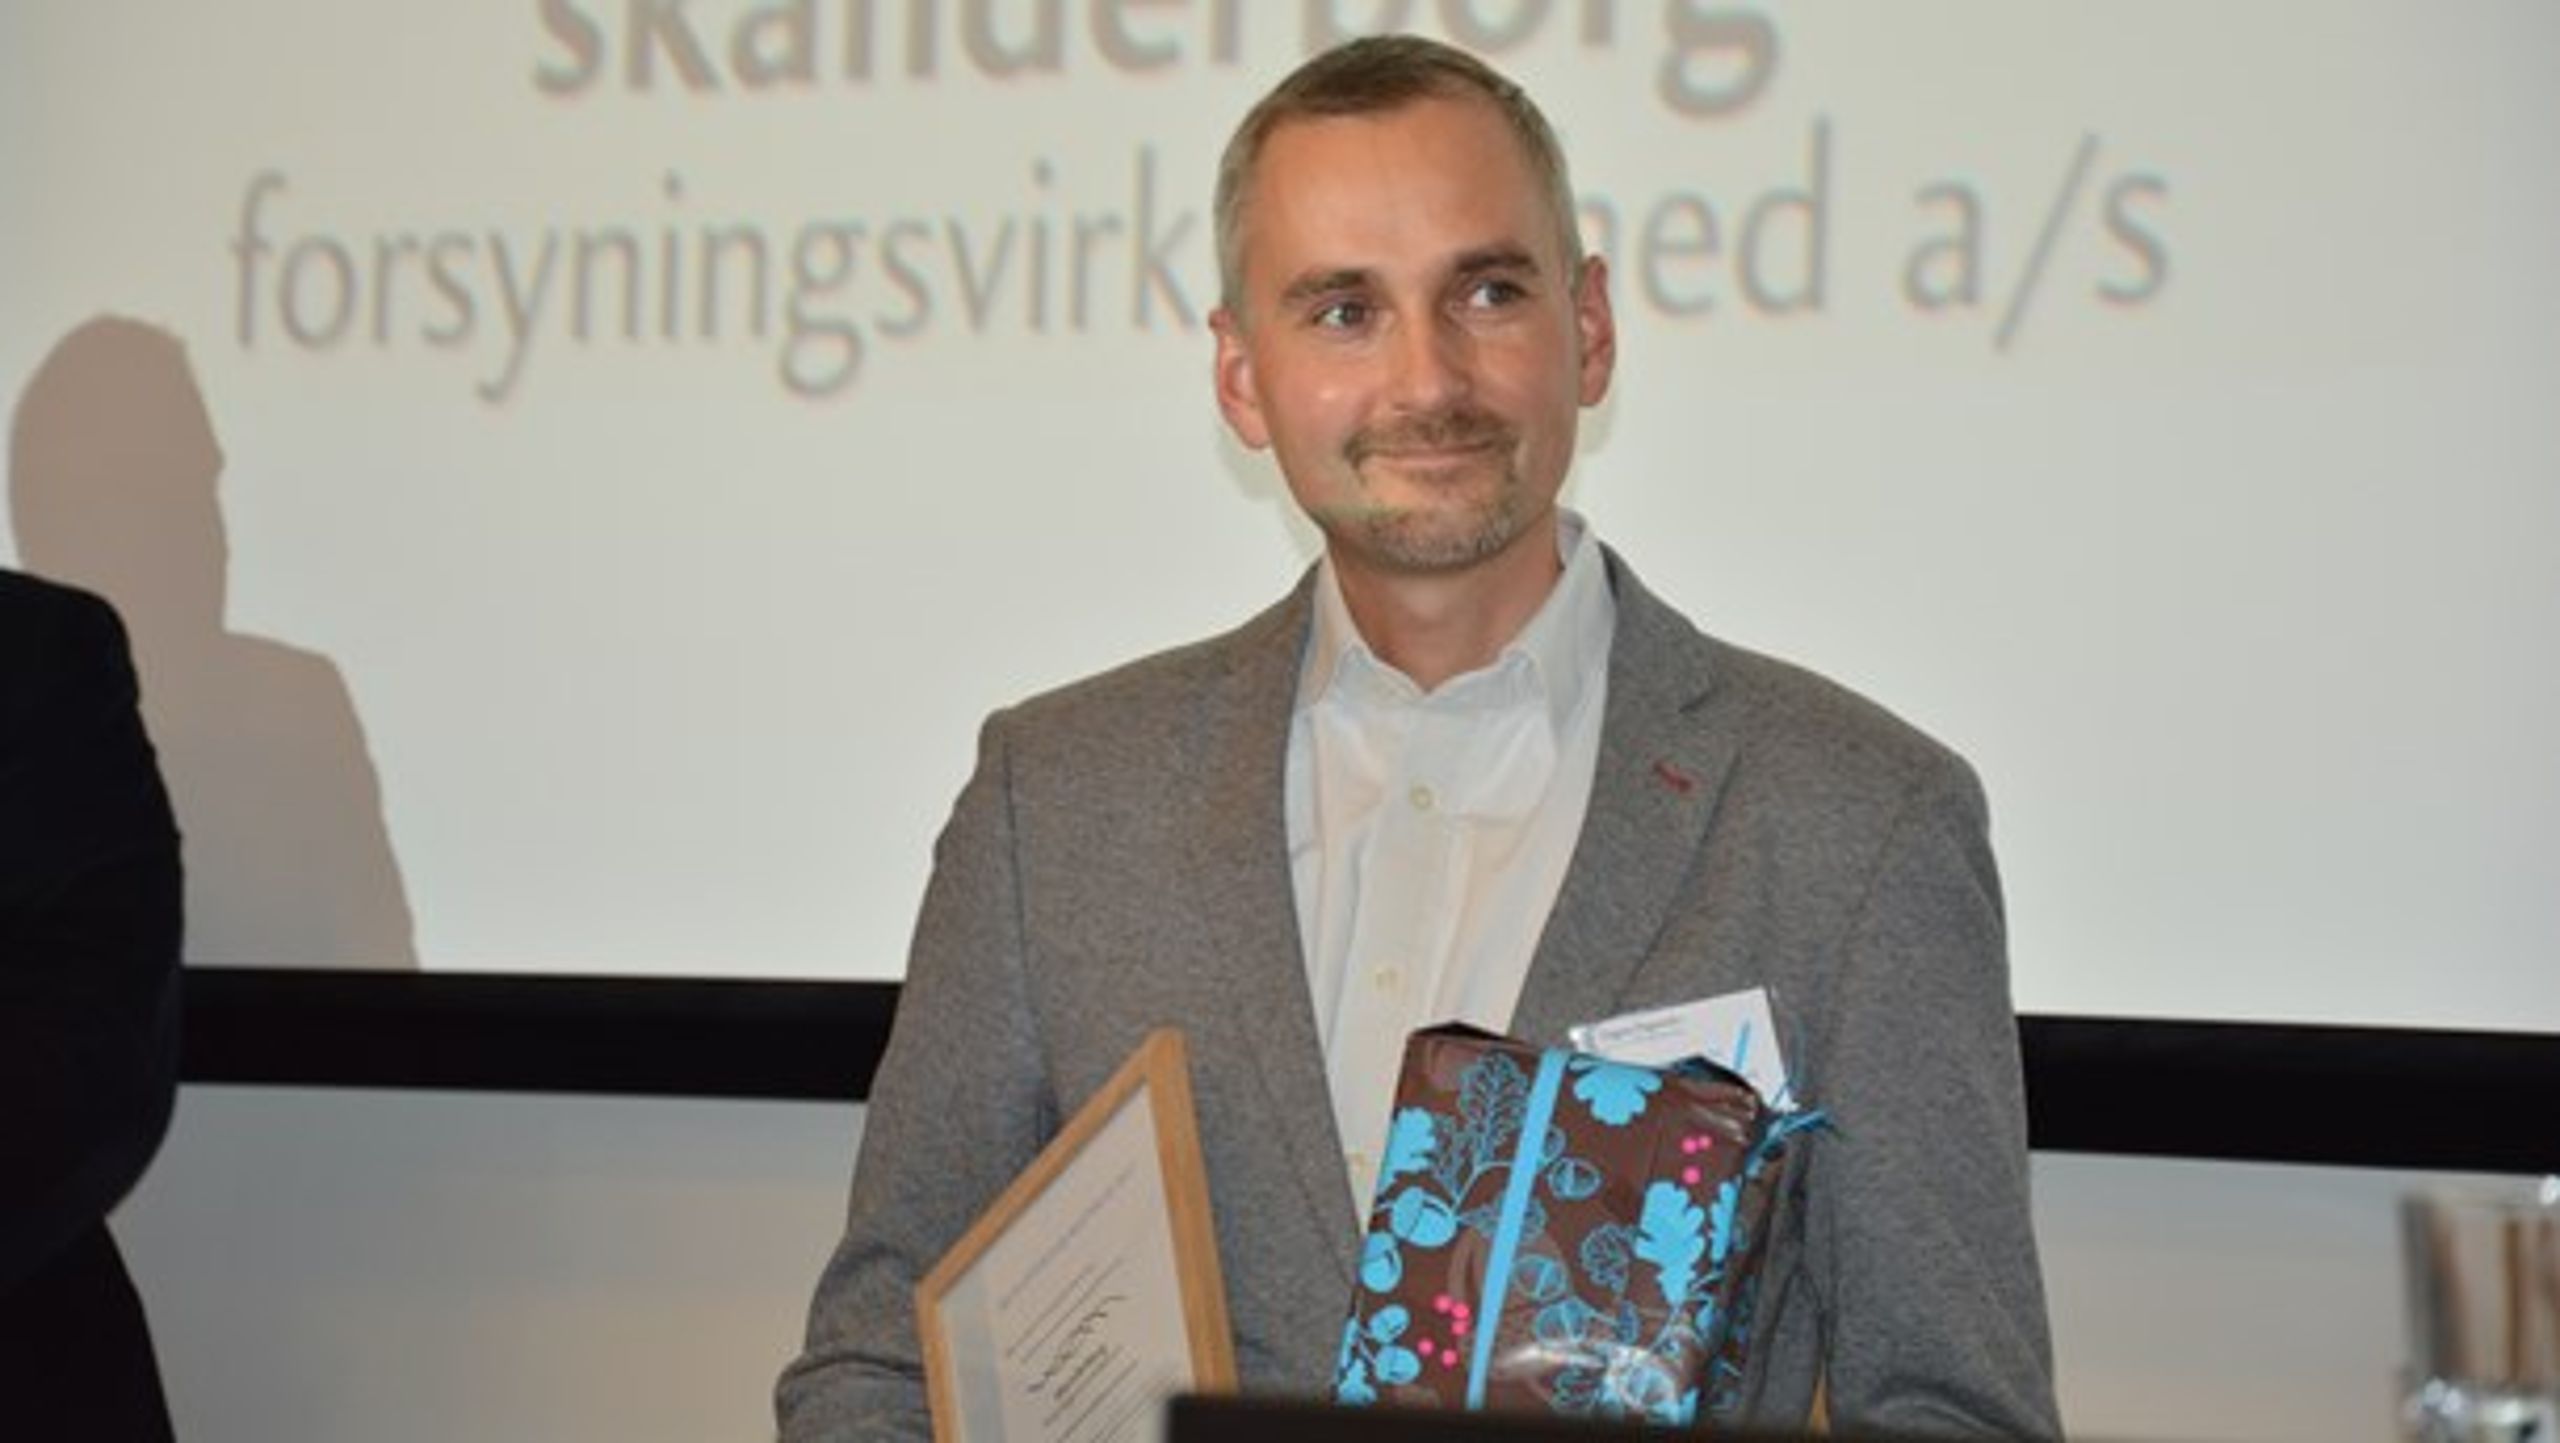 Skanderborg Forsynings bestyrelsesformand Henrik Müller modtog prisen "Årets Offentlige Bestyrelse".